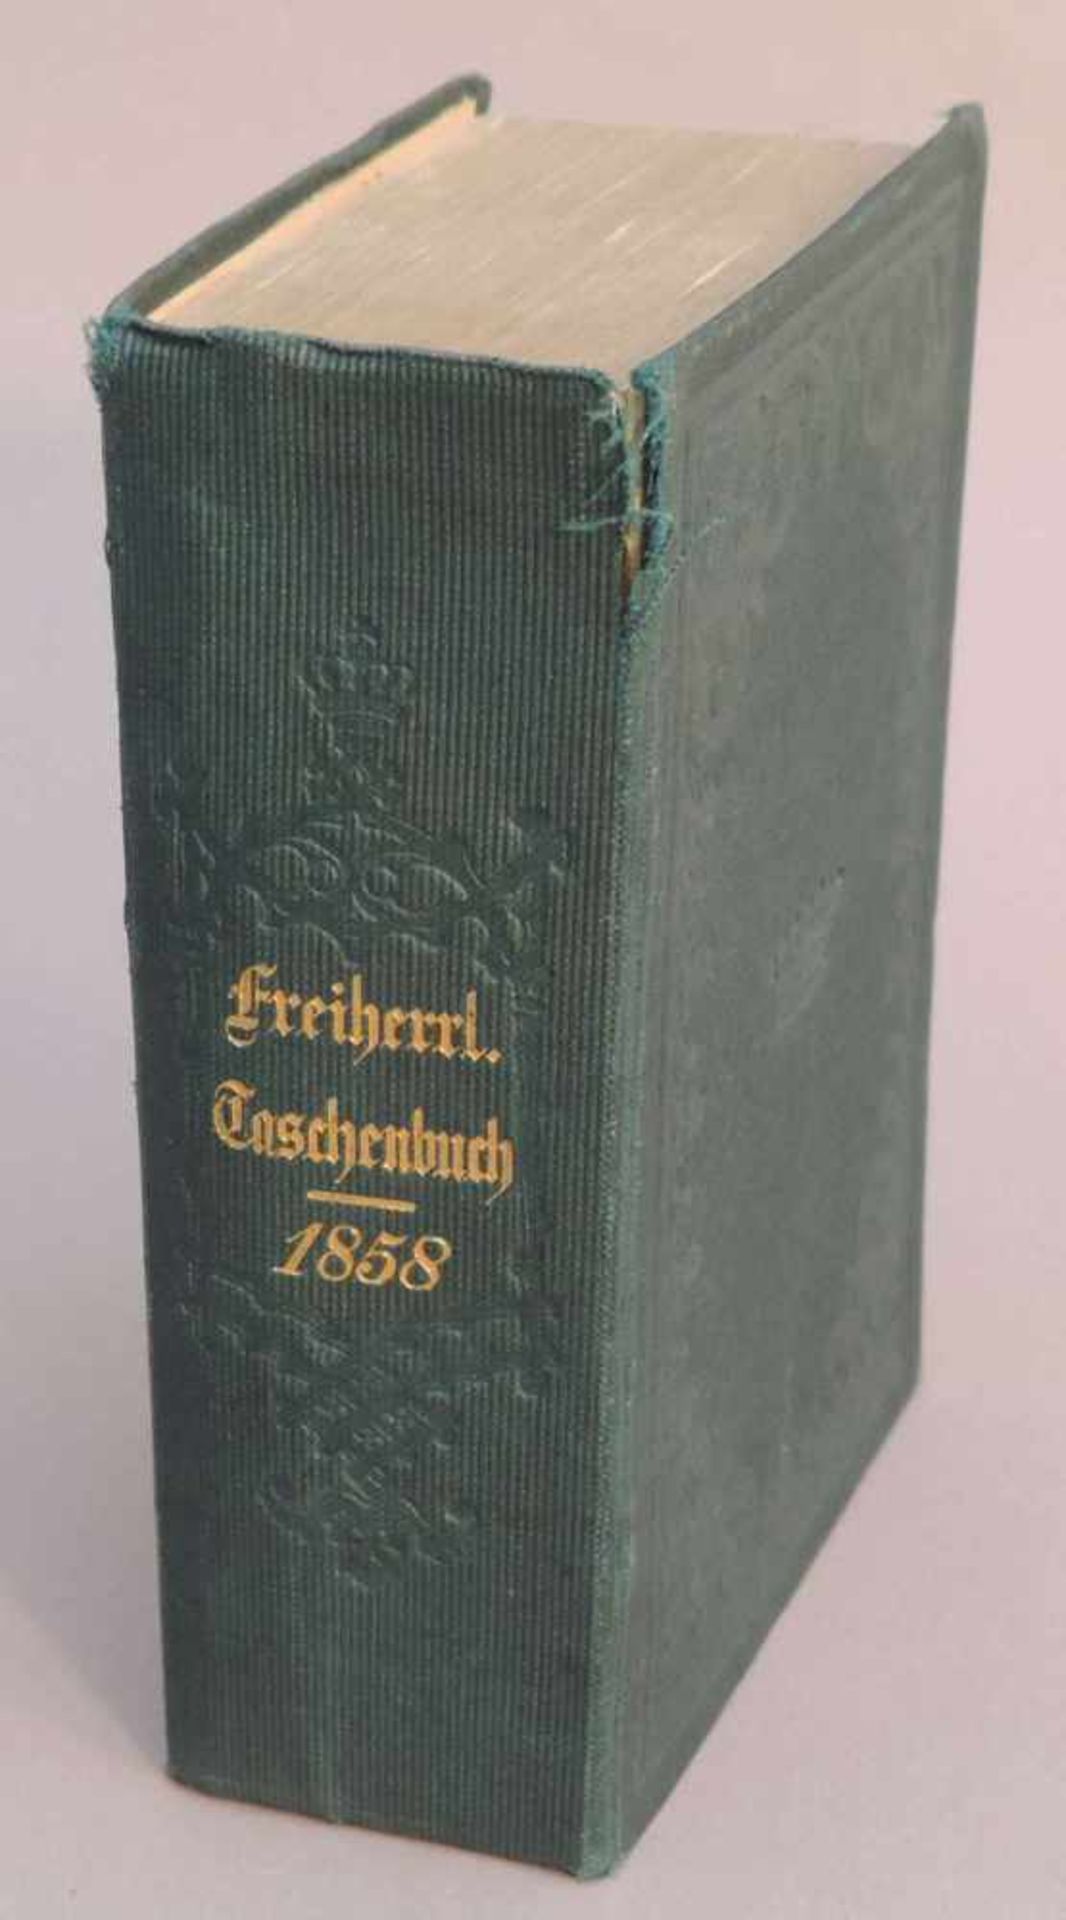 GOTHAISCHES Genealogisches Taschenbuch der Freiherrlichen Häuser 1858, 8. Jahrgang, Gotha, - Bild 2 aus 2